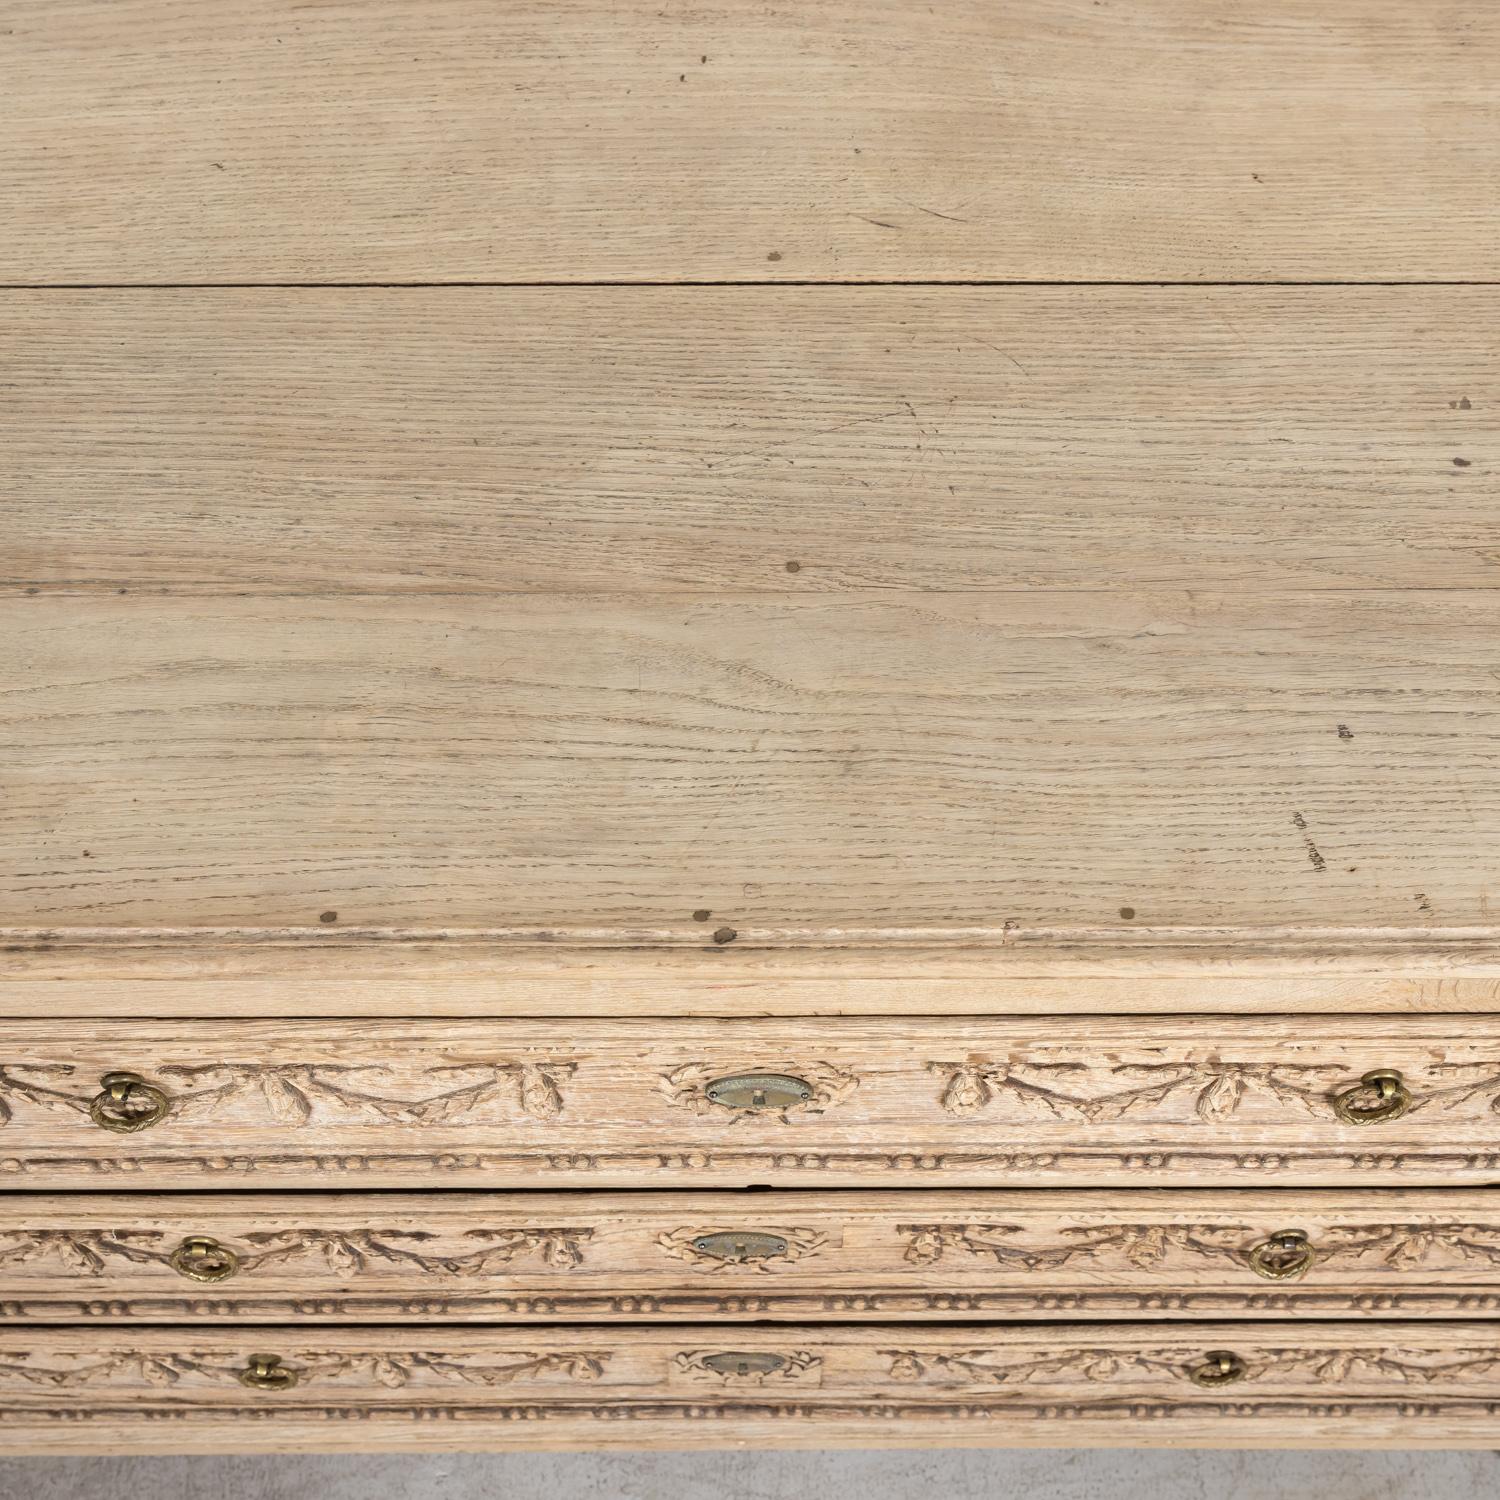 Commode provençale en chêne blanchi du début du XIXe siècle de style Louis XVI français 1